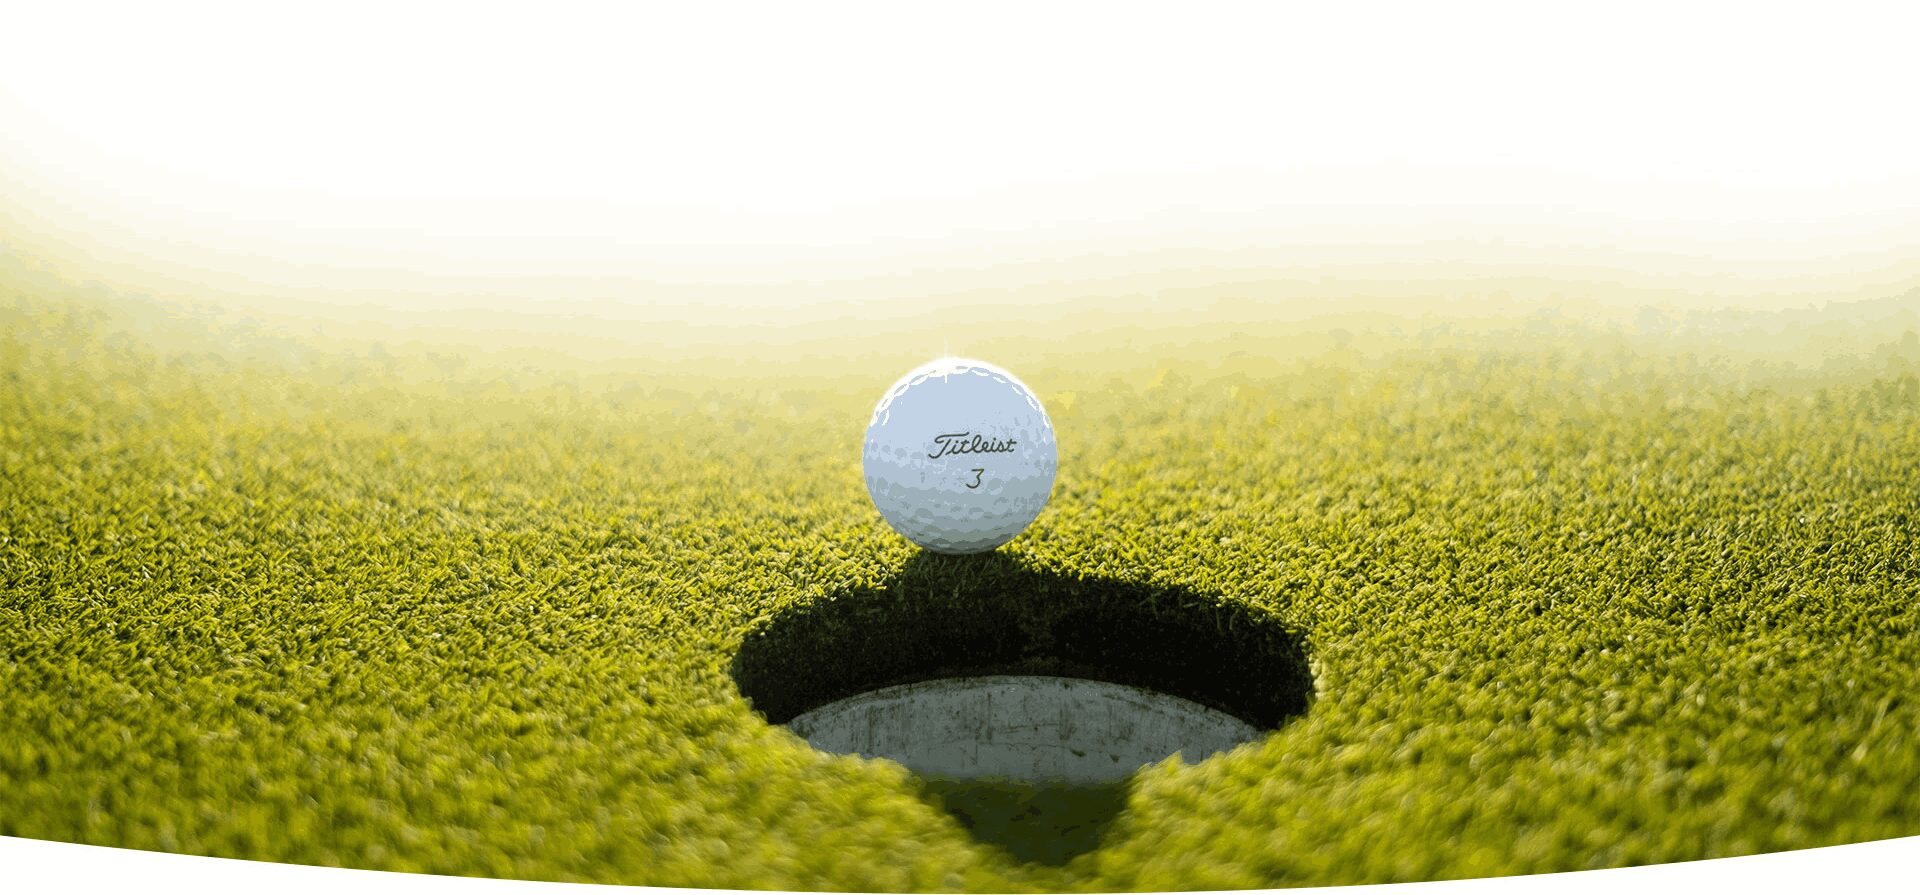 White Golf Ball Near Hole on Green Grass